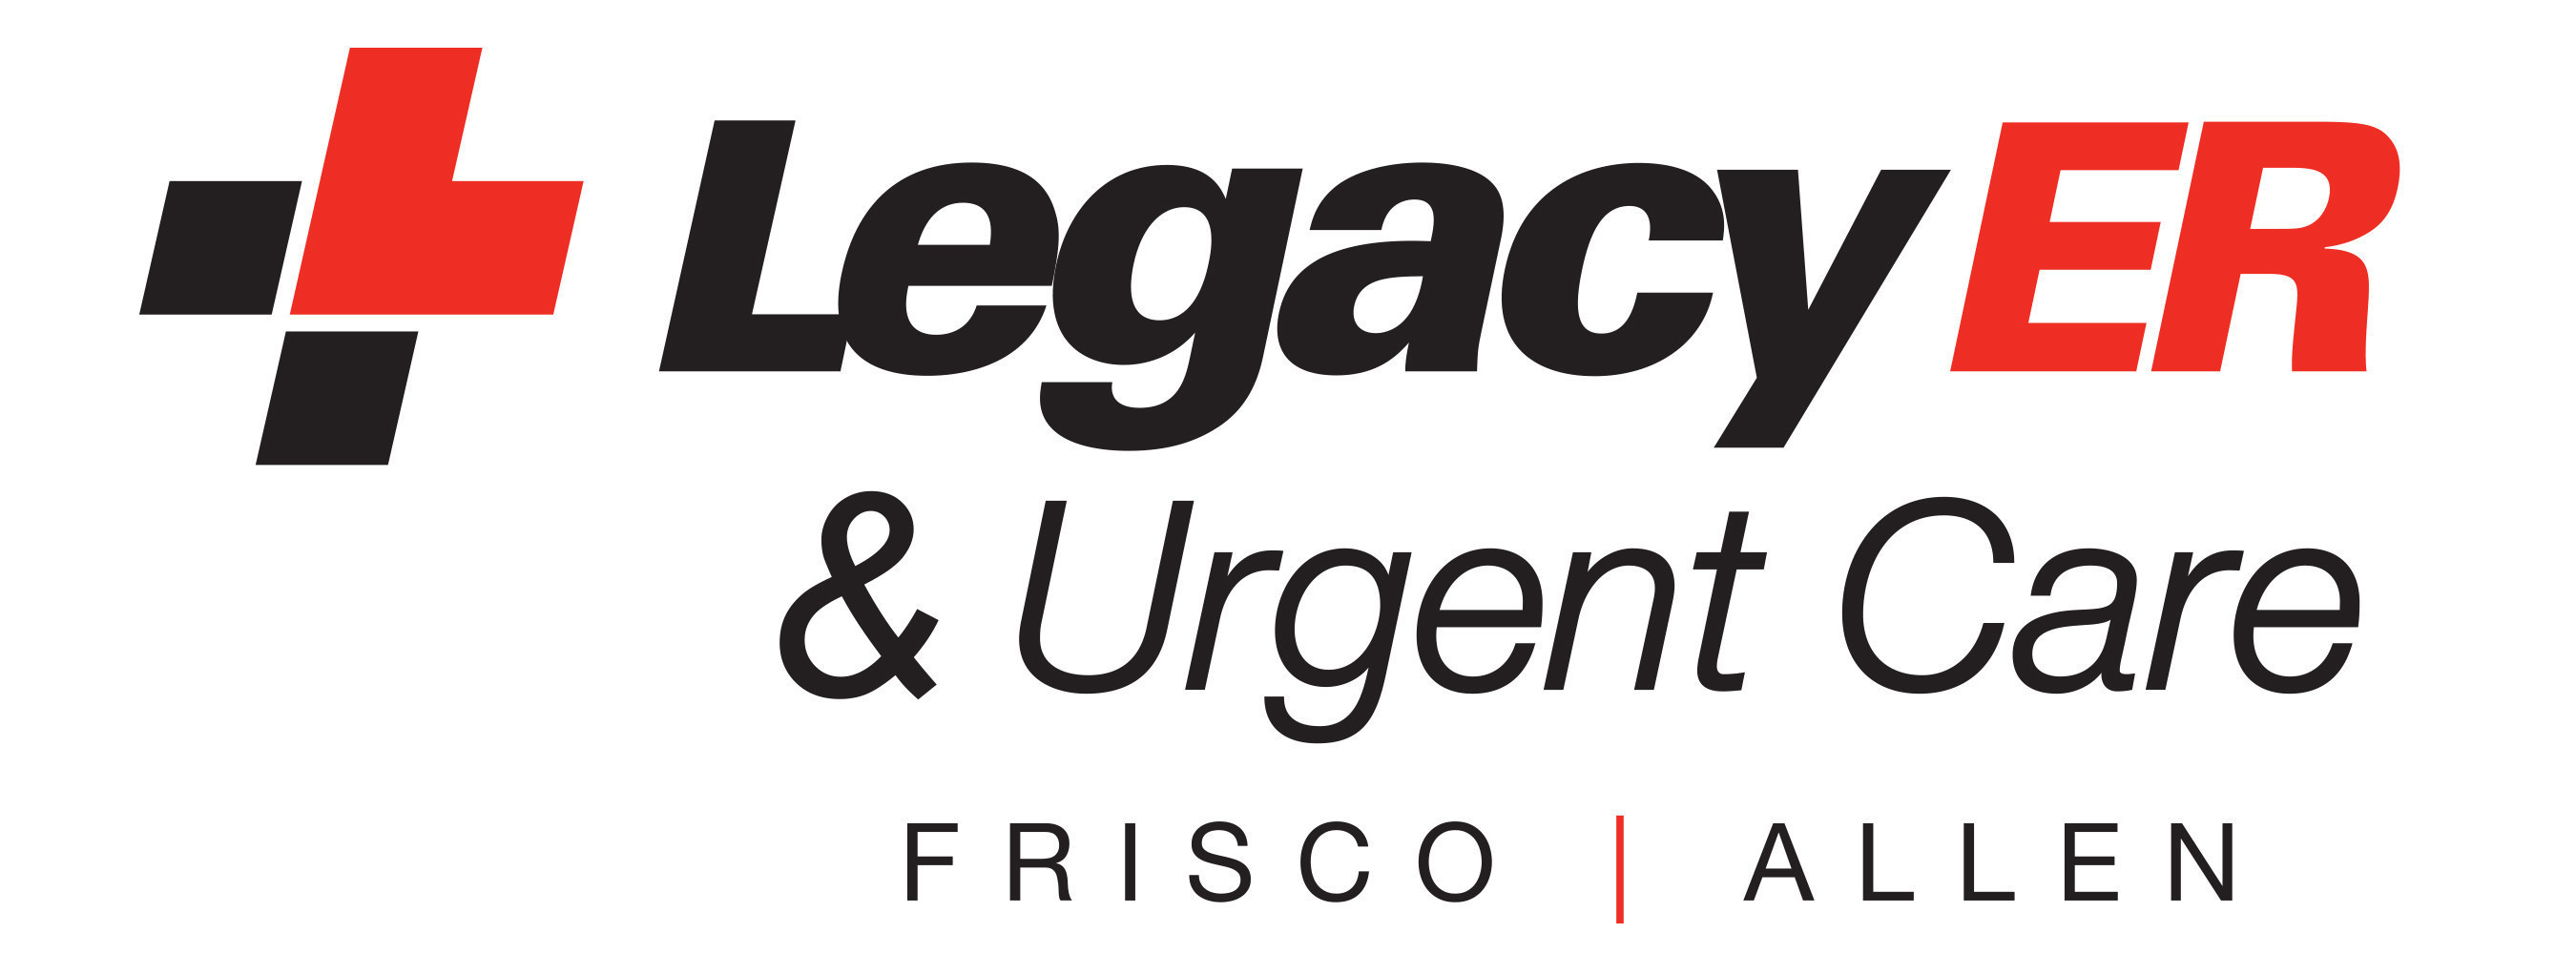 Legacy ER & Urgent Care